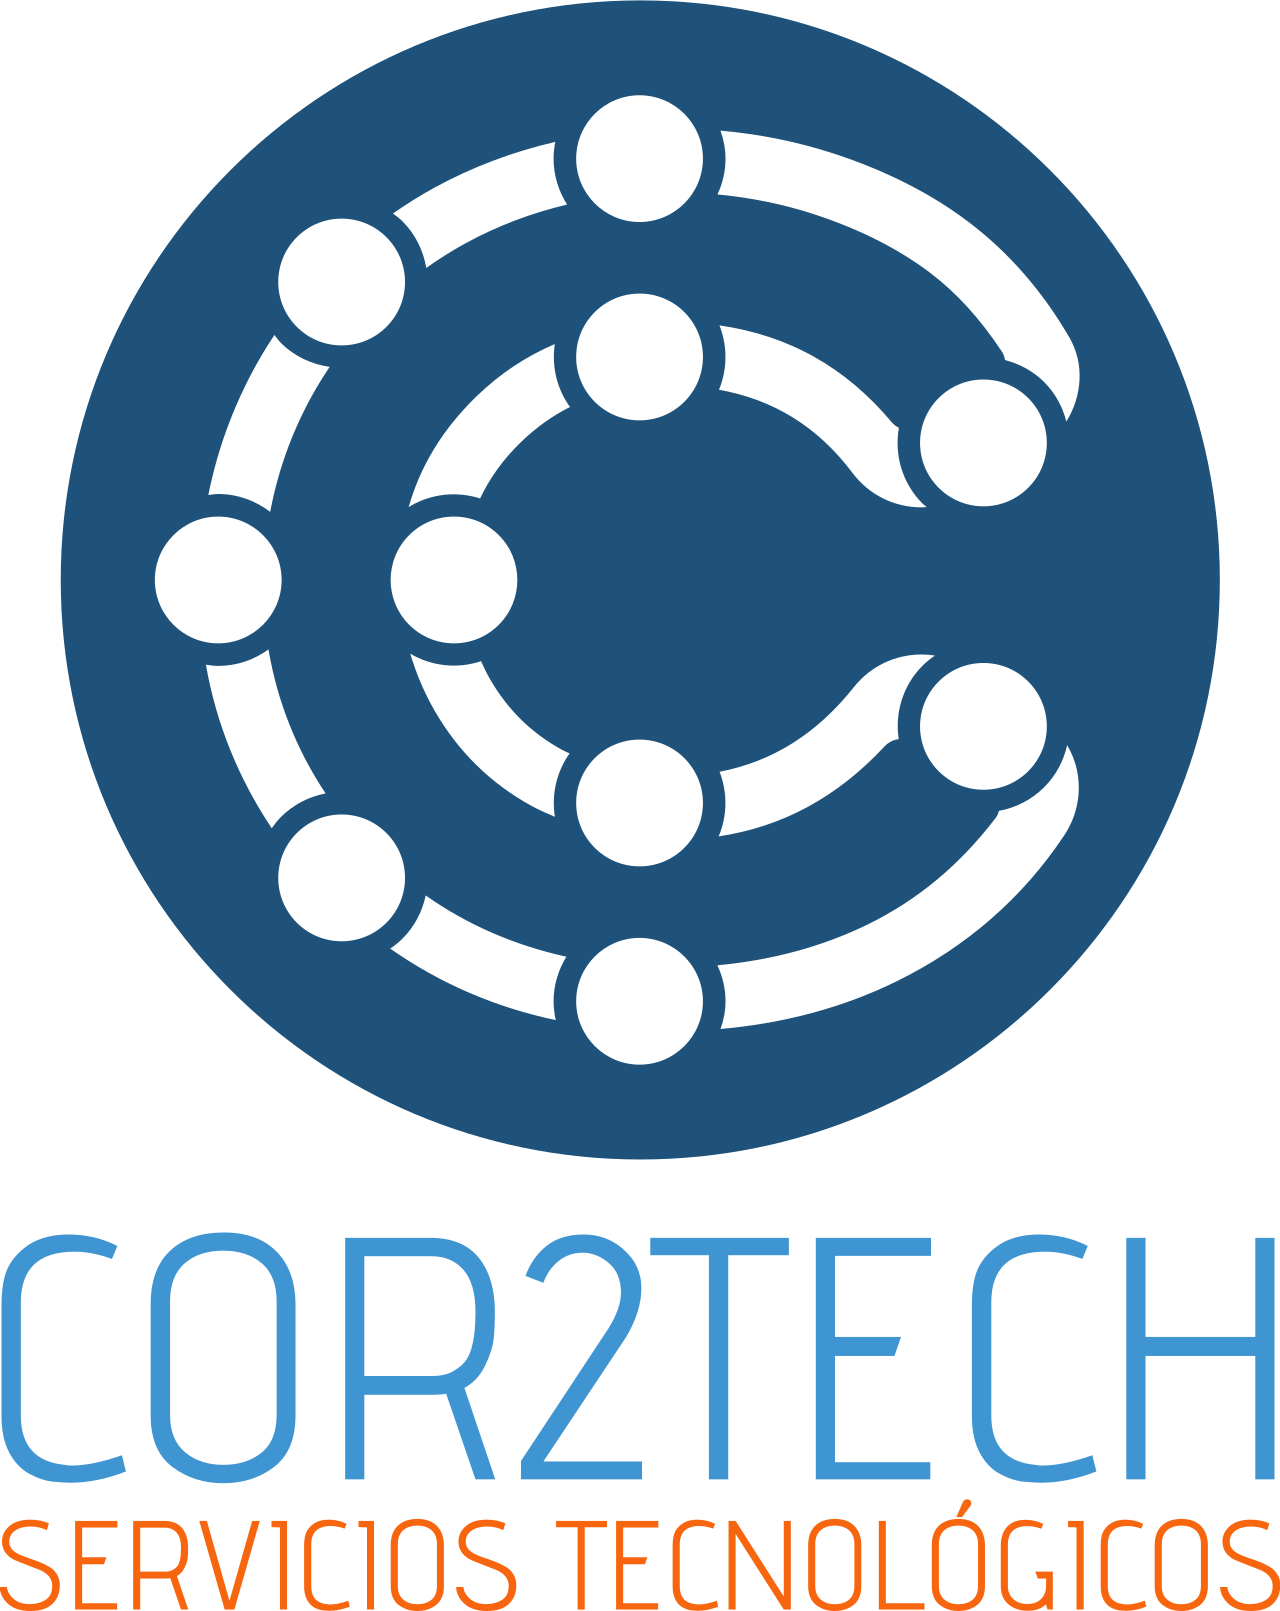 COR2TECH's logo